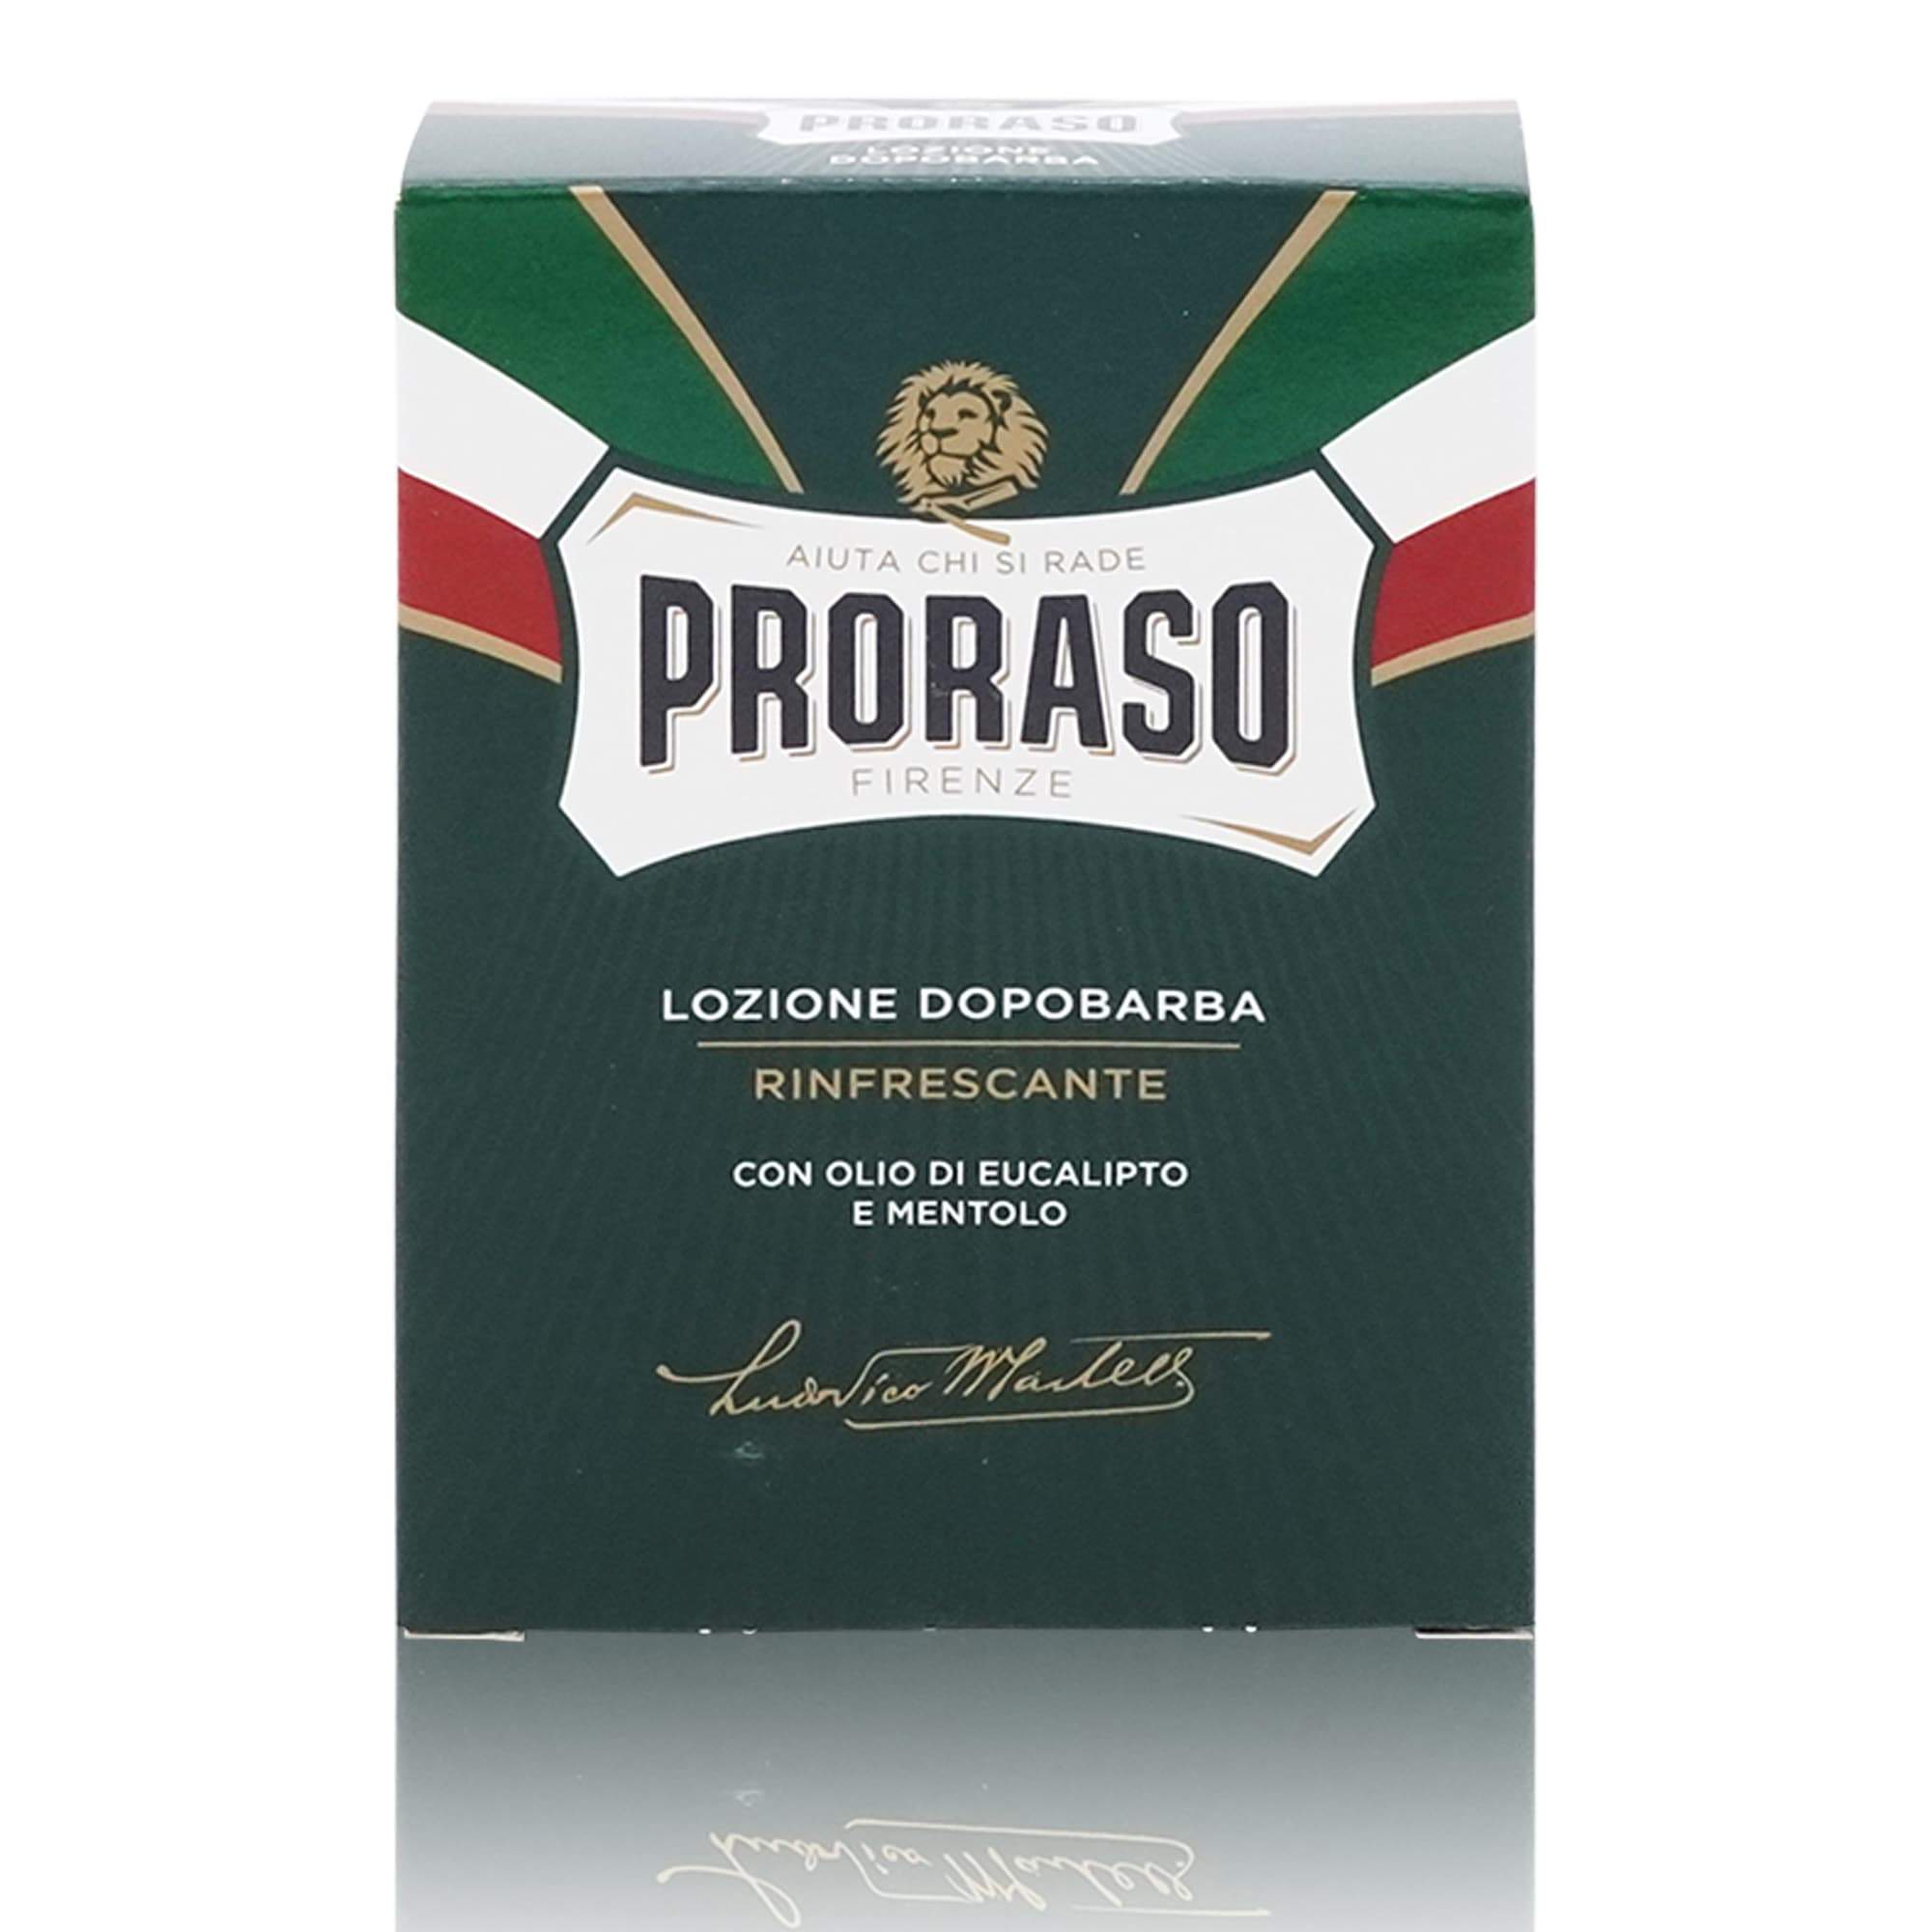 PRORASO Lozione Dopobarba – Aftershave Rasierwasser - 0,100l - italienisch-einkaufen.de